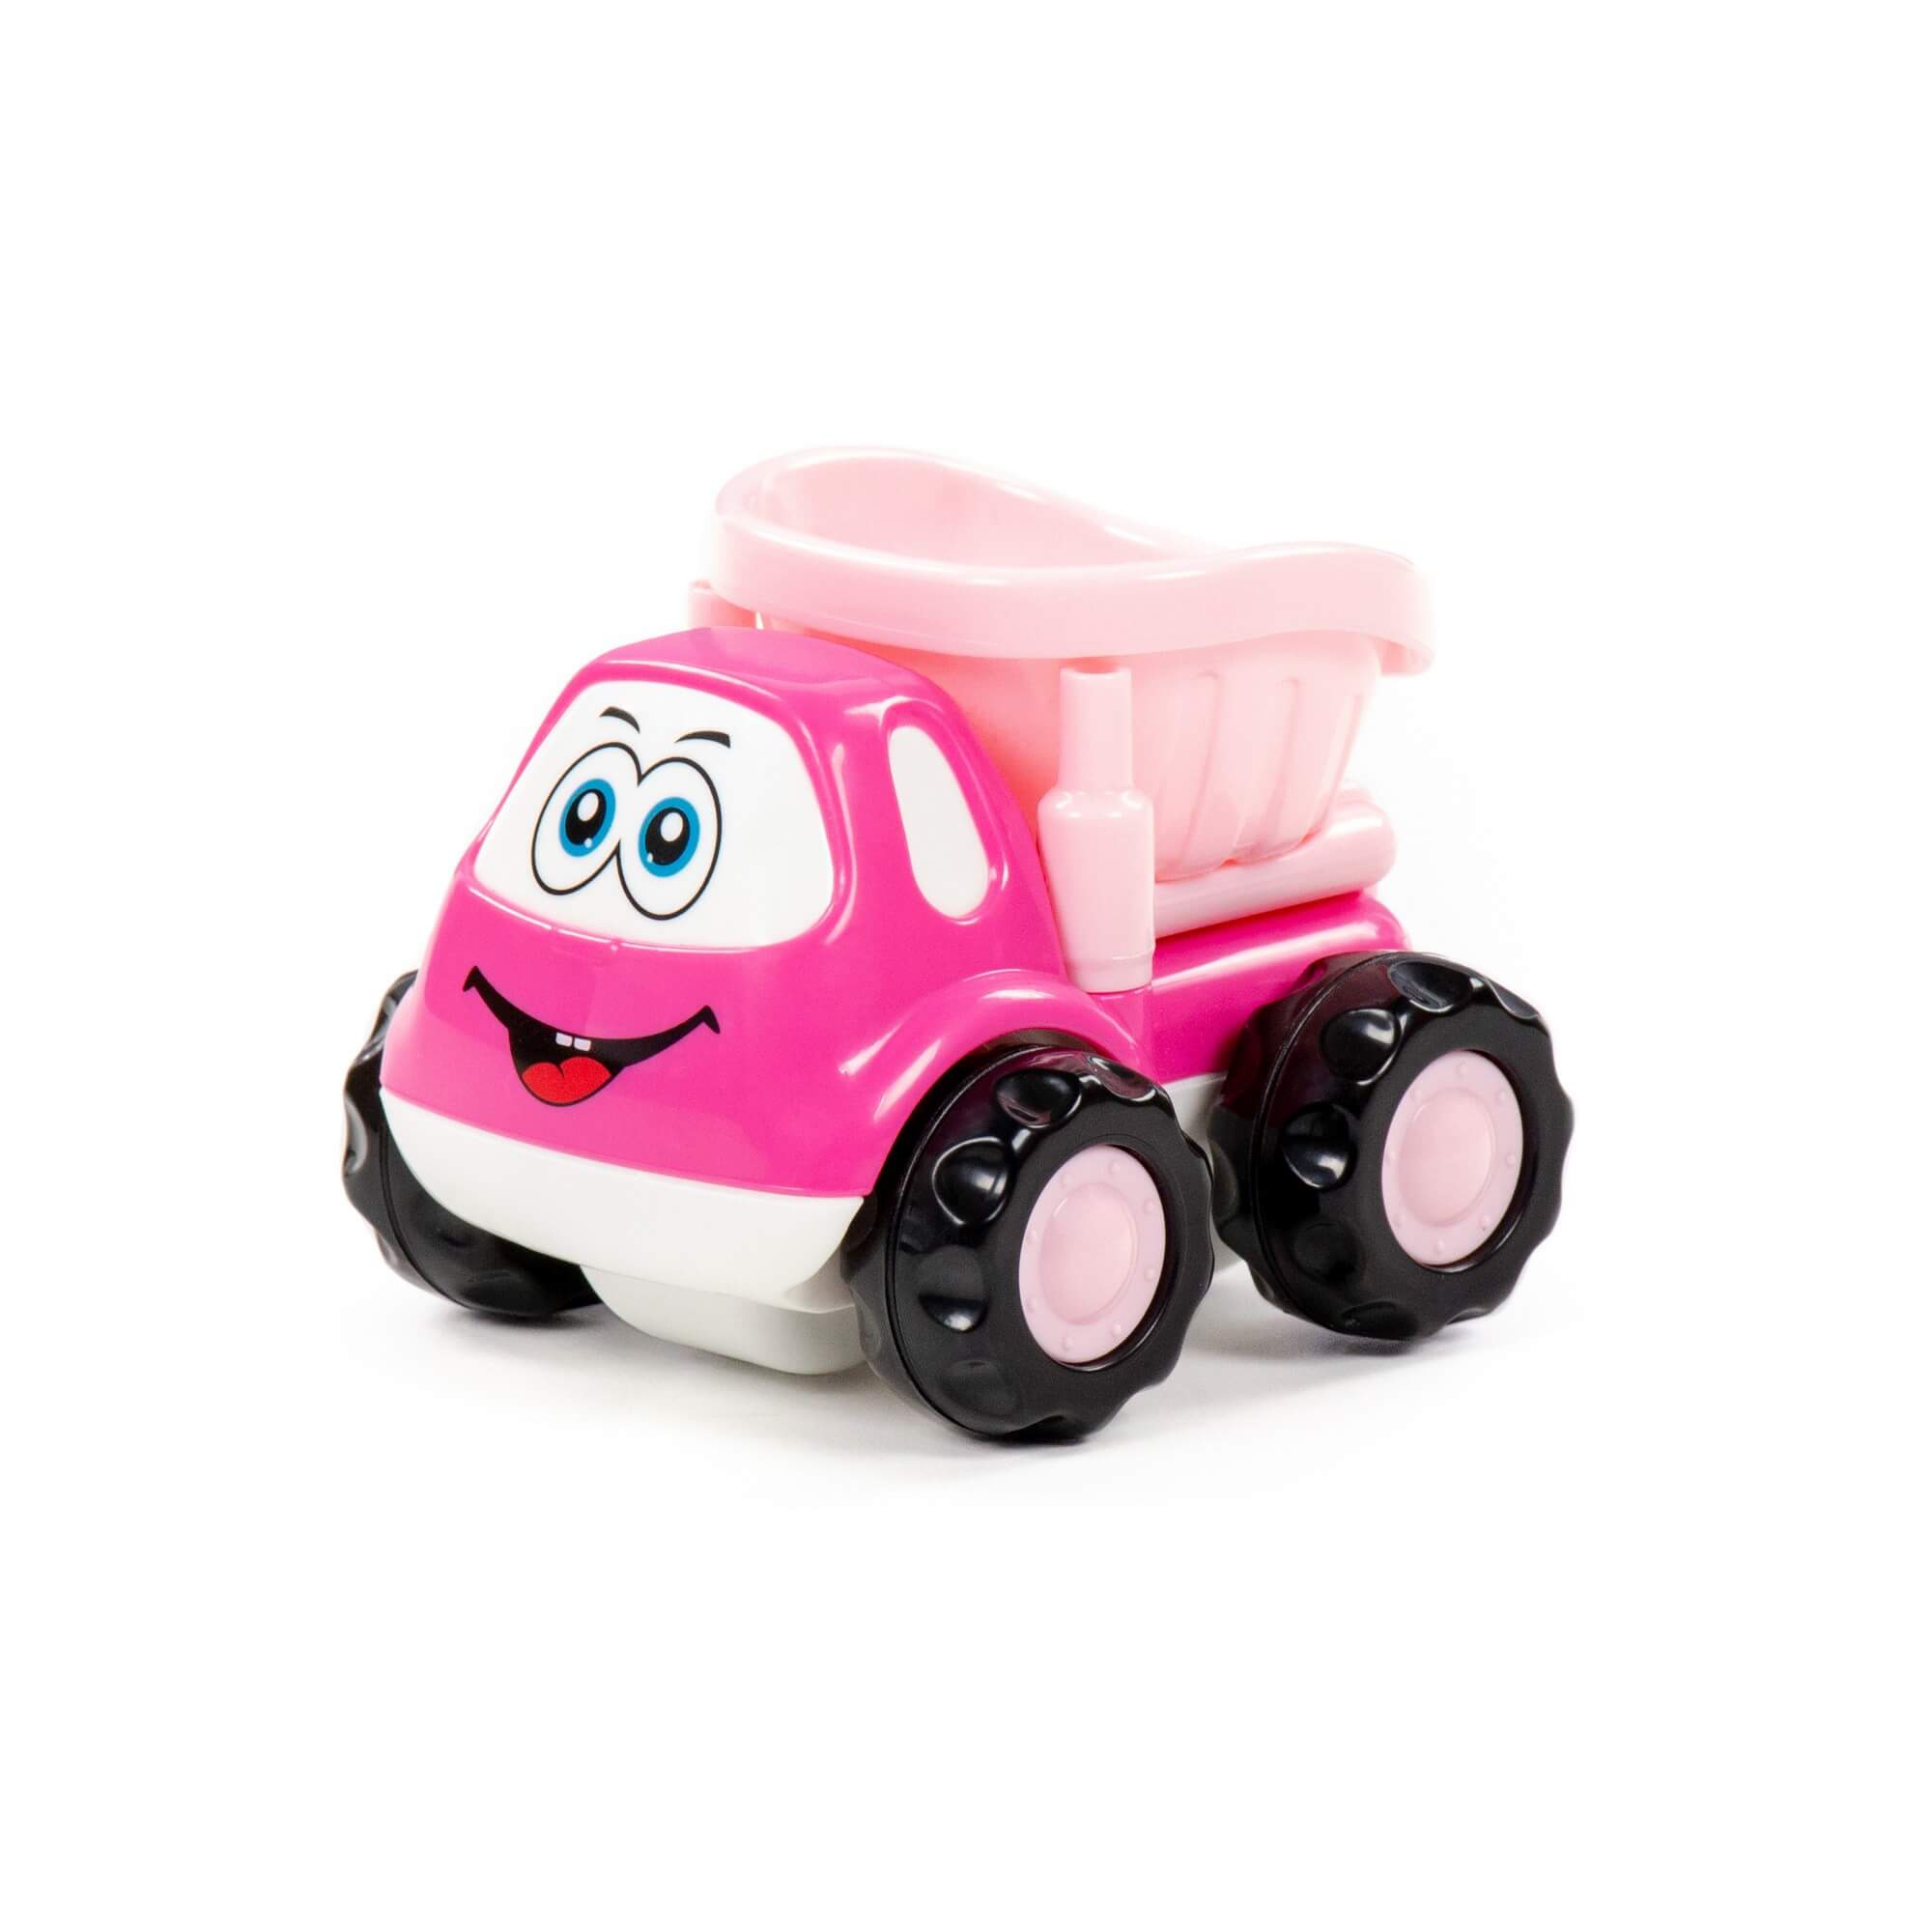 Автомобиль-самосвал Полесье Патрик, инерционный, розовый, в пакете 88789 автомобиль легион 4 розовый 78278